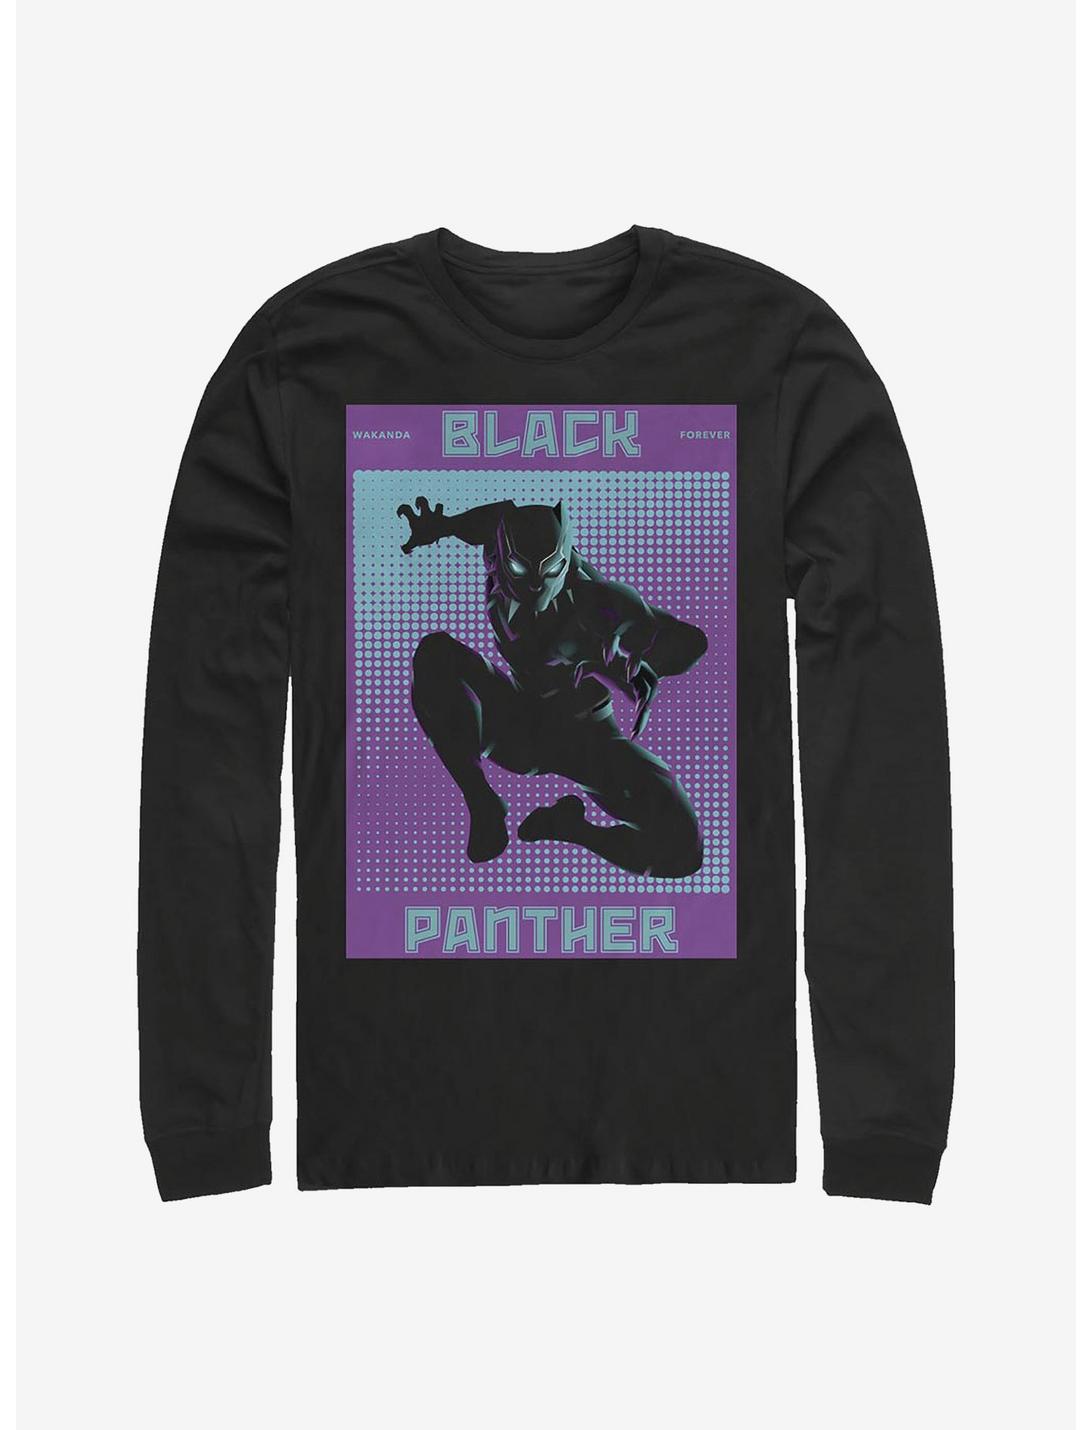 Marvel Black Panther Software Long-Sleeve T-Shirt, BLACK, hi-res